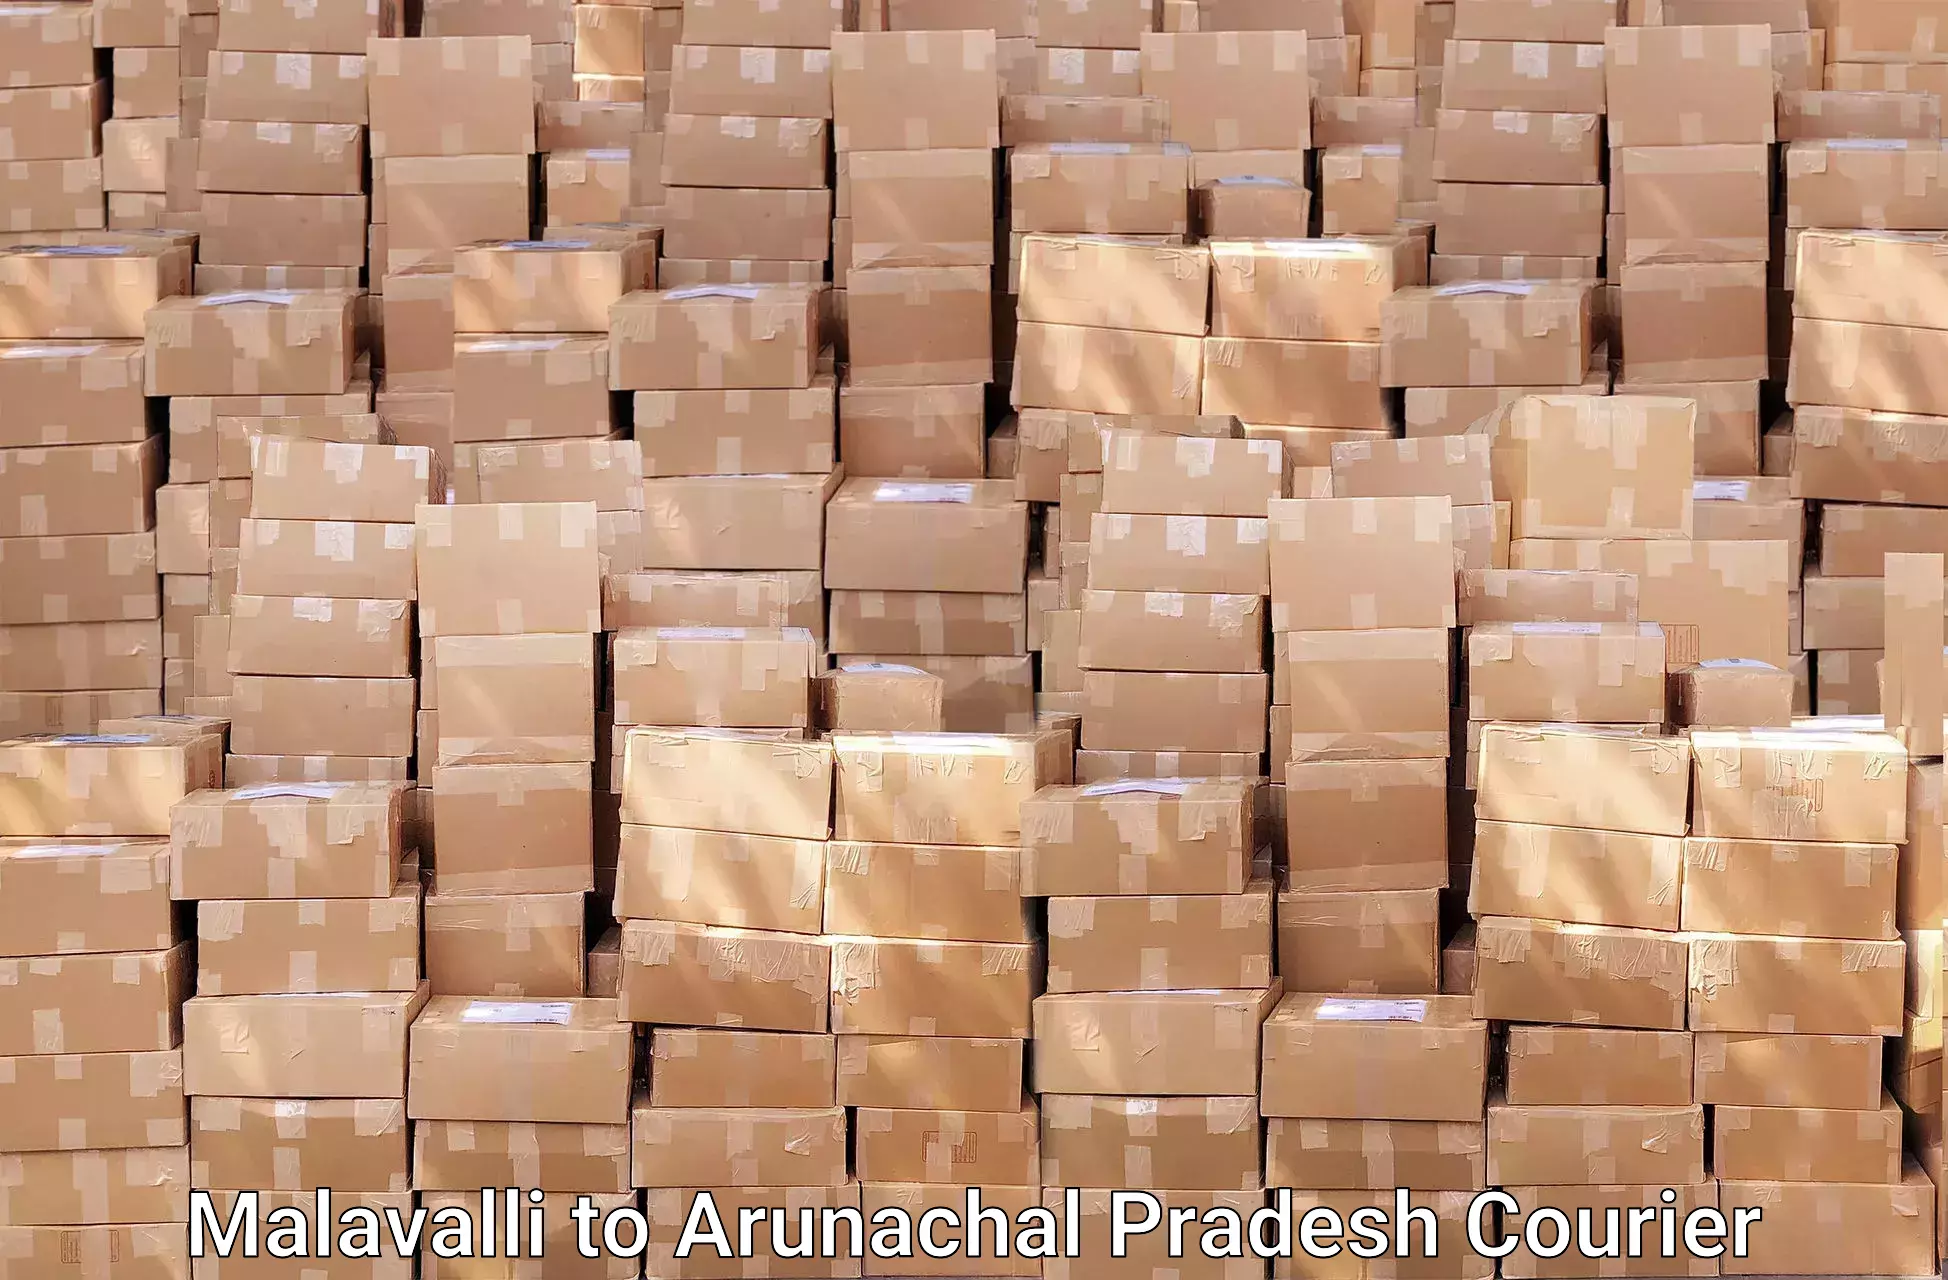 Efficient moving services Malavalli to Arunachal Pradesh